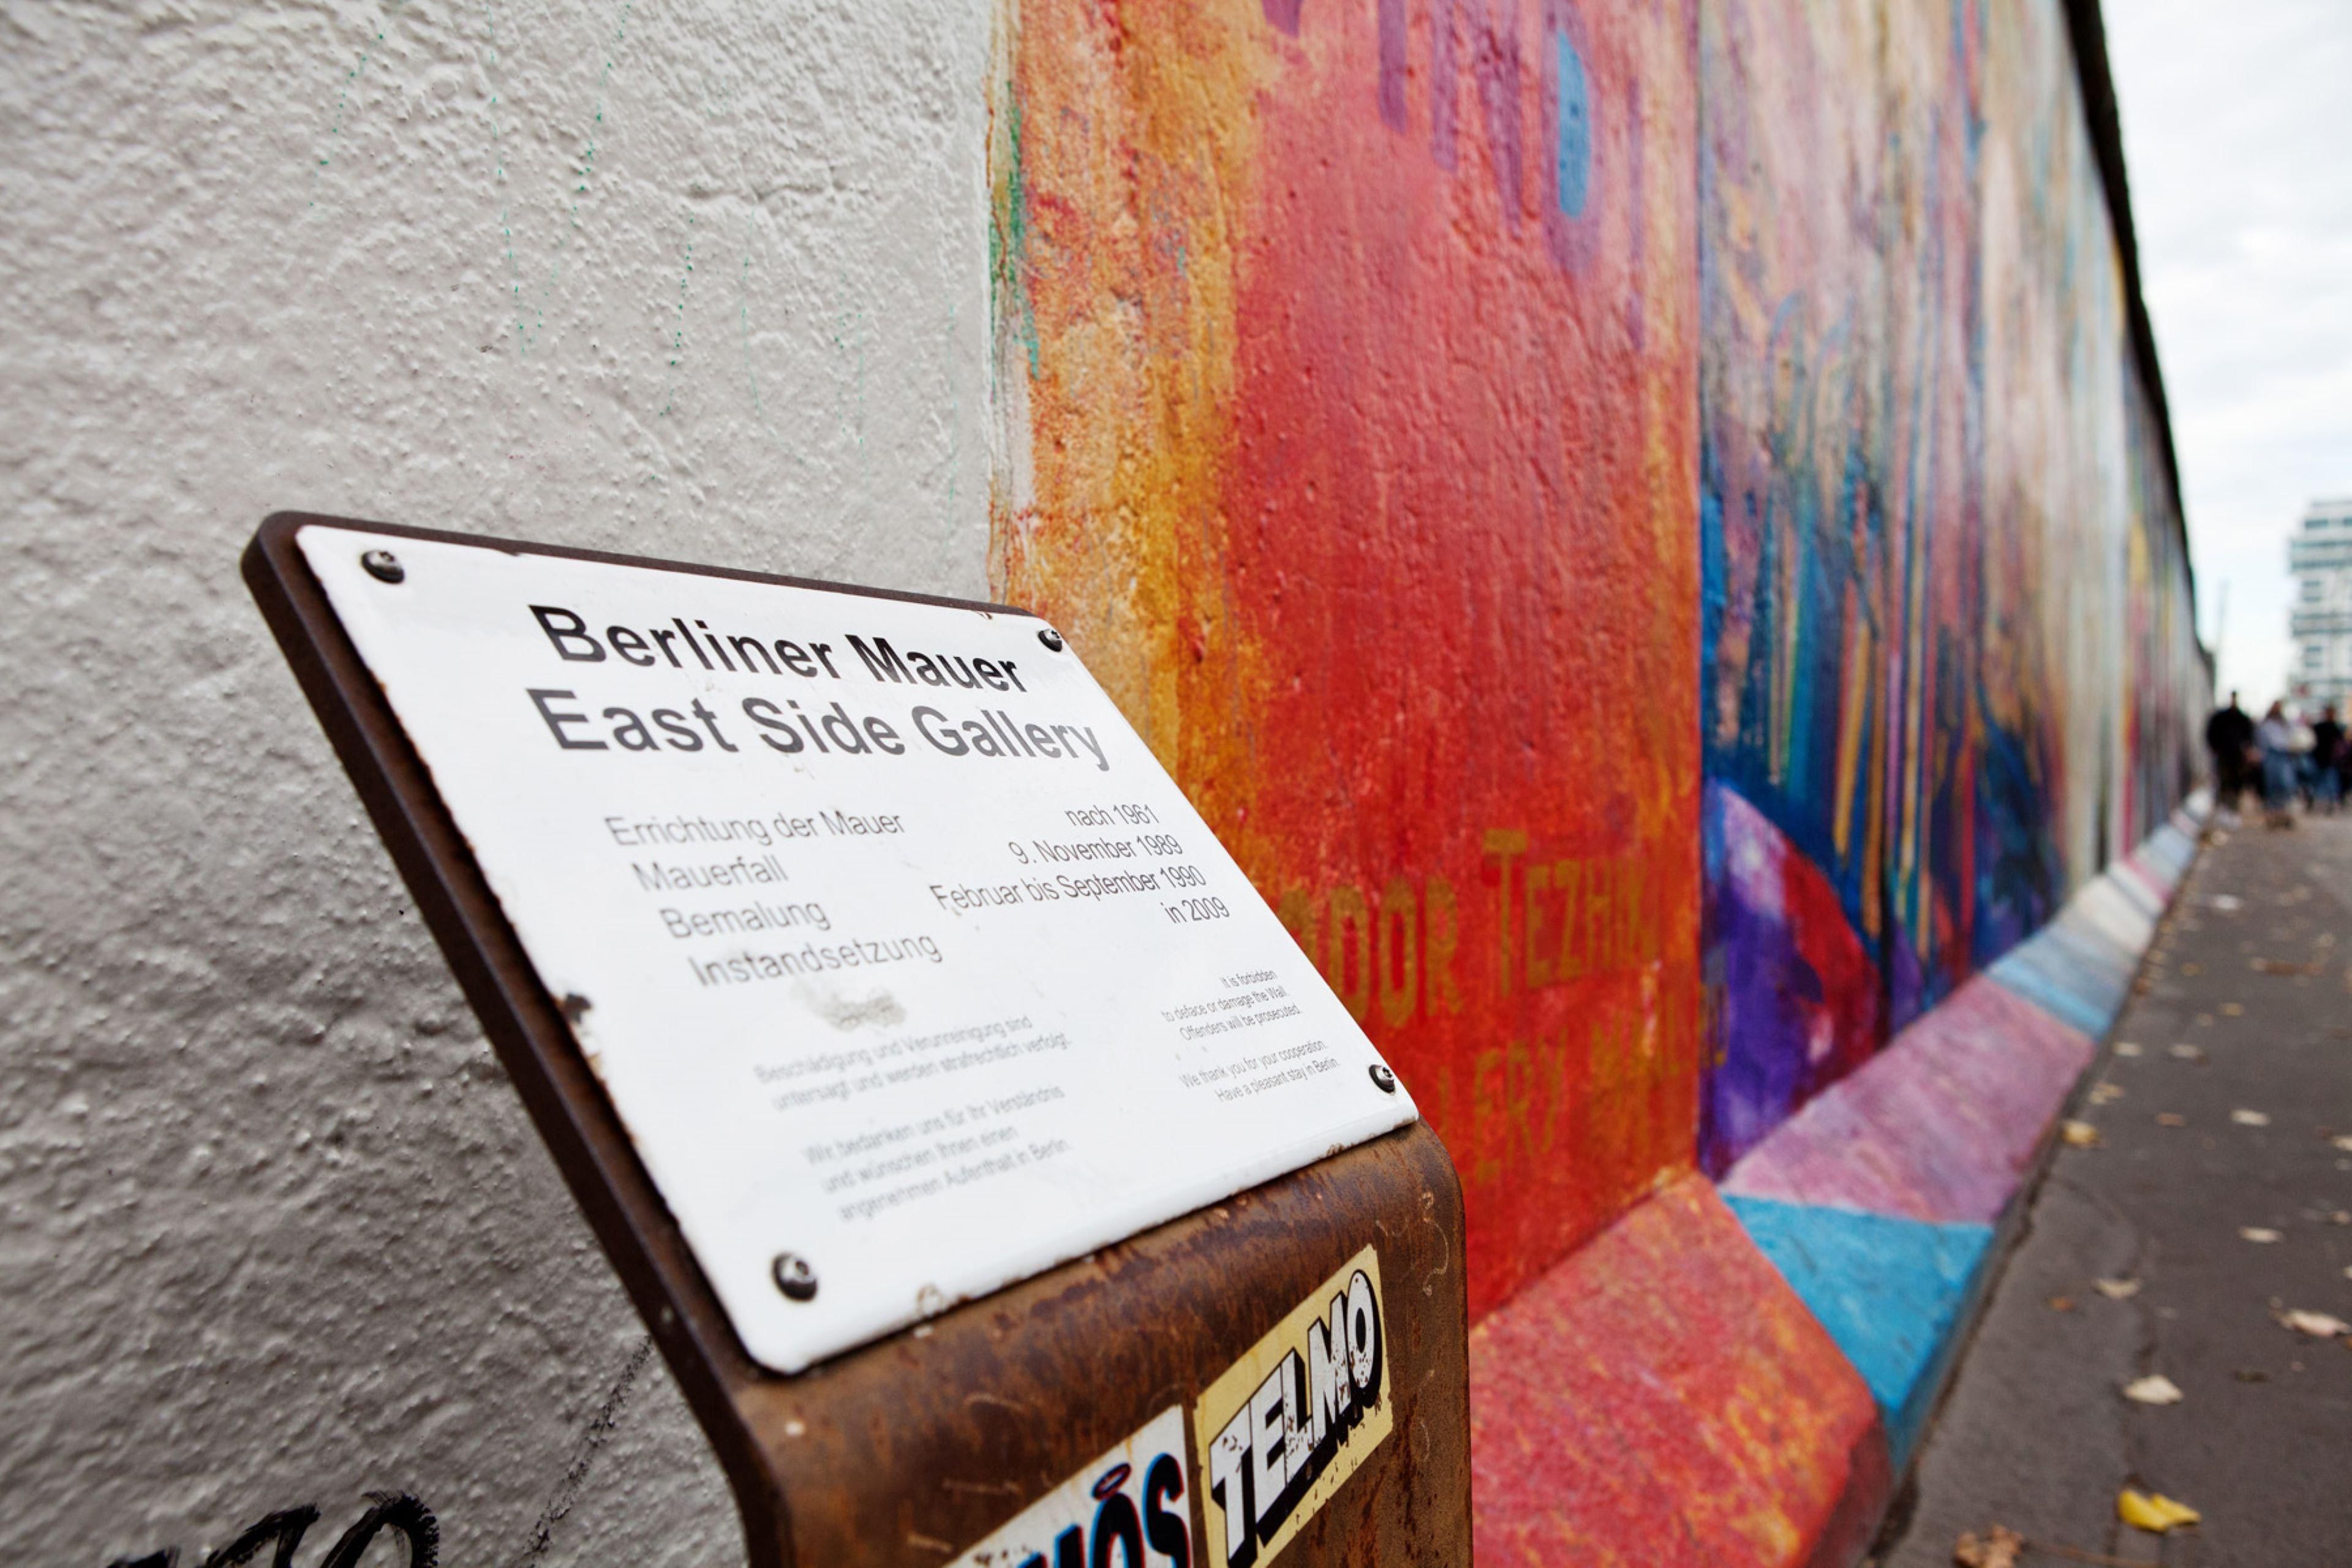 Direkt neben unserem Hotel Indigo Berlin - East Side Gallery befindet sich mit 1,316 Metern die längste Open-Air-Galerie der Welt. 1990 bemalten 118 Künstler aus 21 Ländern die Berliner Mauer. Die Bilder drücken die Freude über den Fall der Mauer aus.